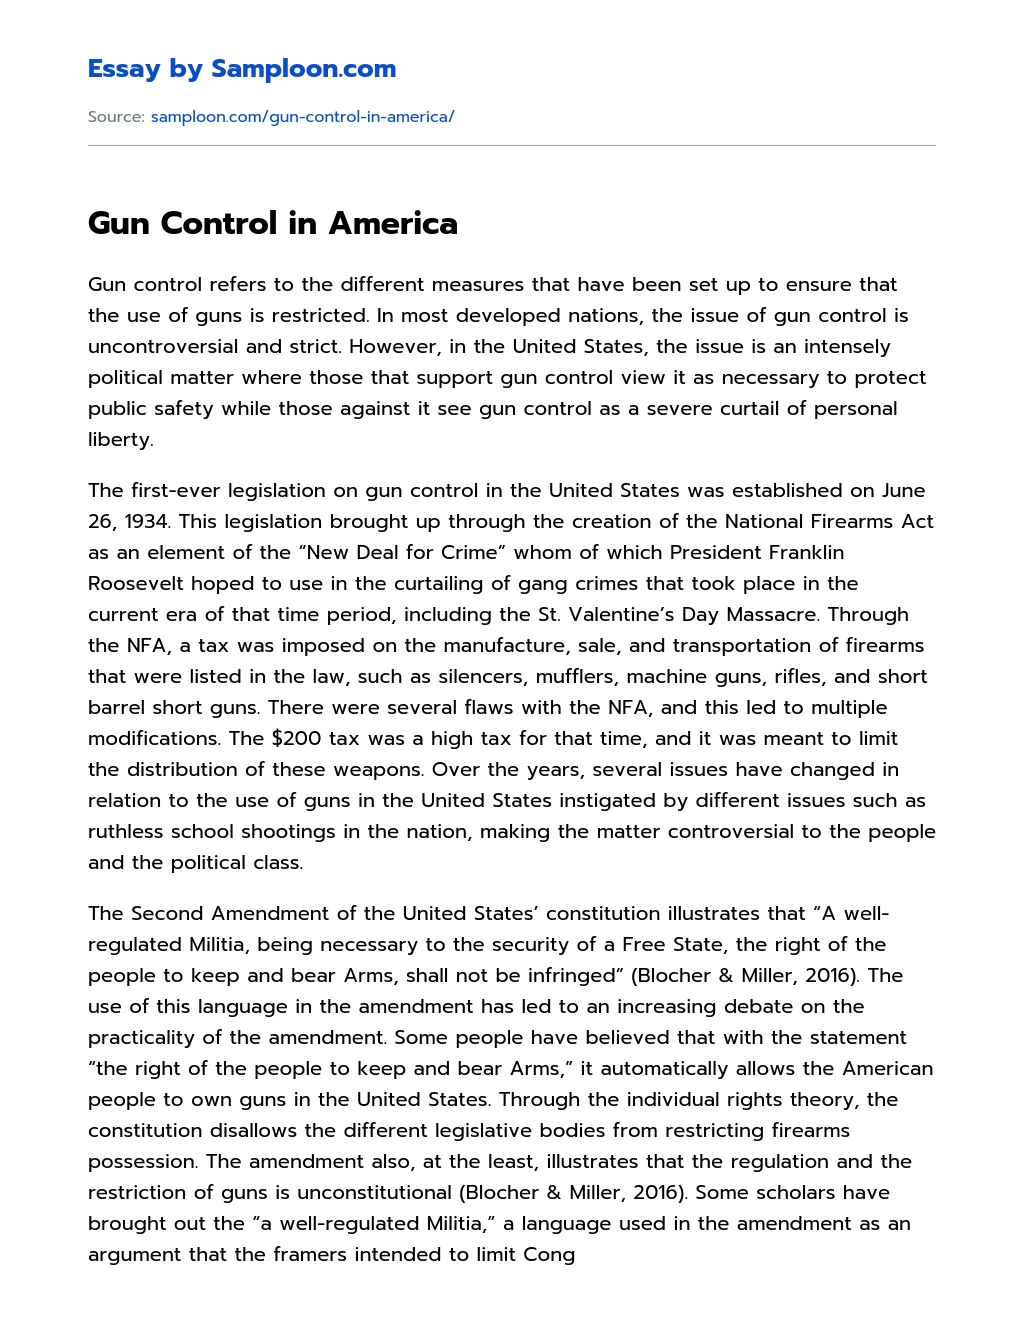 Gun Control in America essay